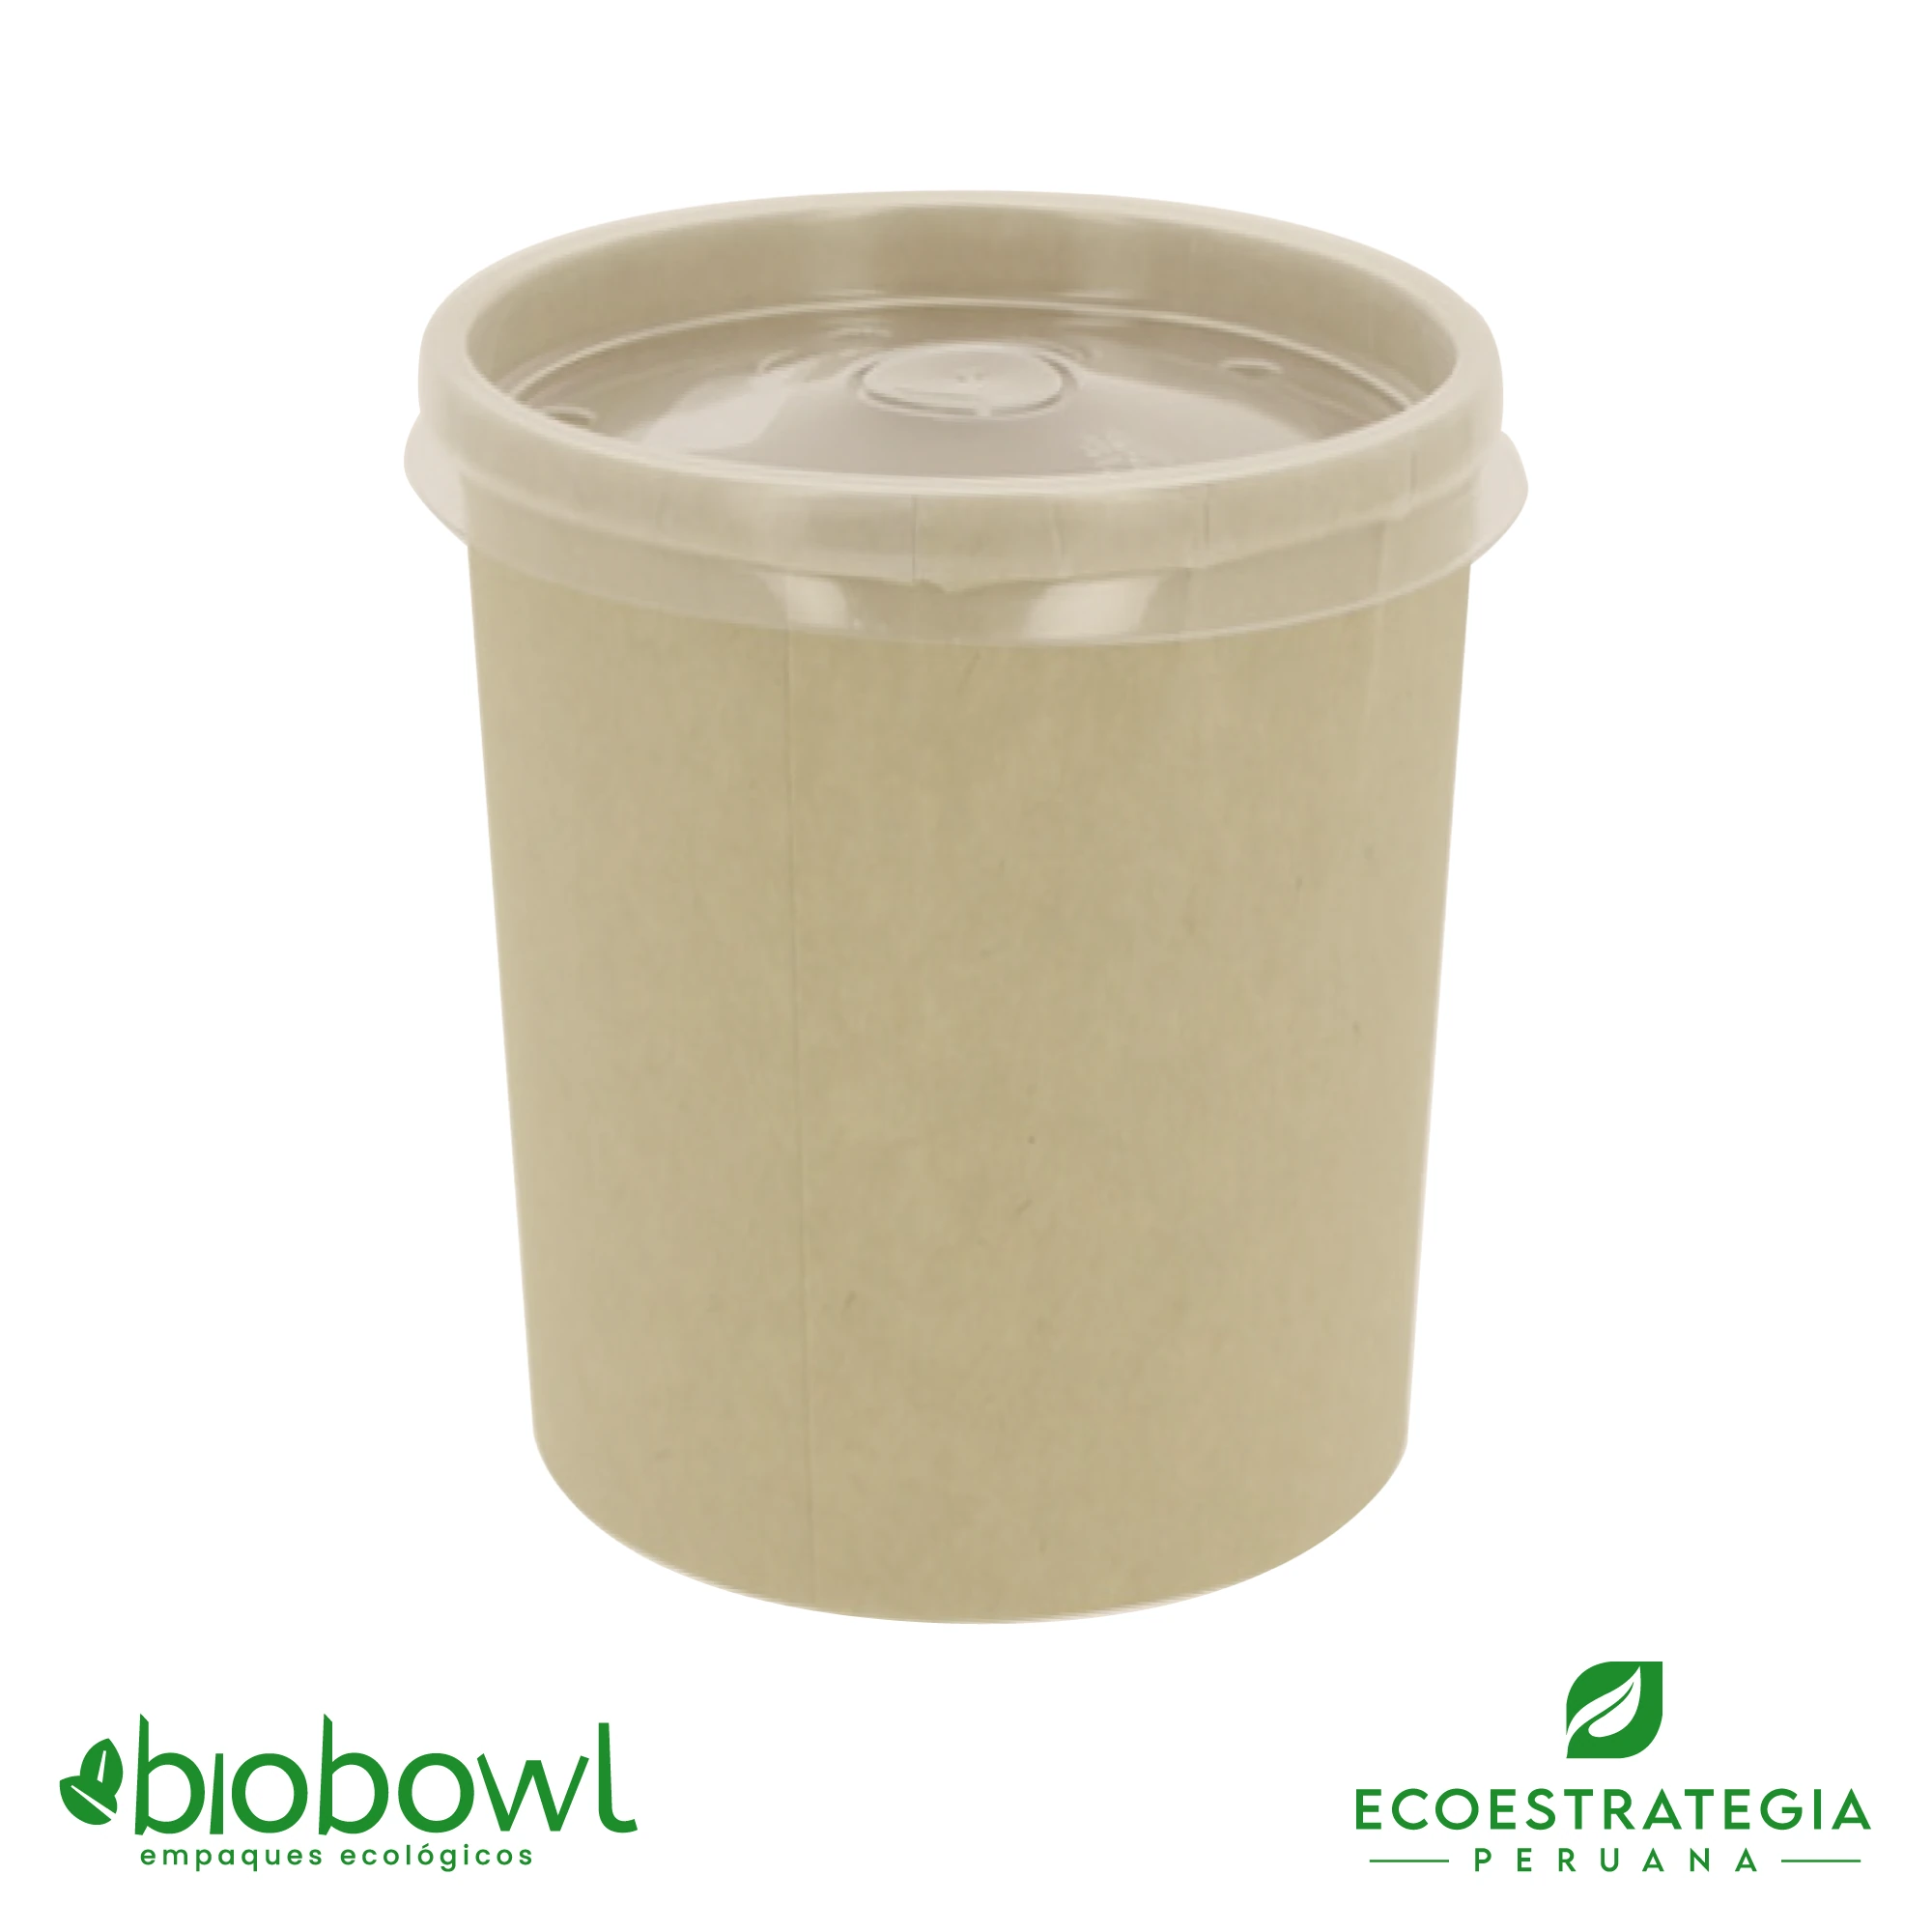 El bowl de bambú biodegradable de 32oz o EP-S32, es también conocido como bowl bamboo 32oz o bambú sopero 32oz, bambú salad 32oz, bowl para ensalada con tapa pet 32oz o sopero con fibra de bambú 32oz, bowl bambú ecologico, bowl bambú reciclable, bowl descartable, bowl bambu postres 32oz, bowl bambu helados 32oz, envase de cartón biodegadable, envases biodegradables Perú, envases biodegradables lima, envases biodegradables peru, envases de cartón biodegradables, contenedores de cartón biodegradables